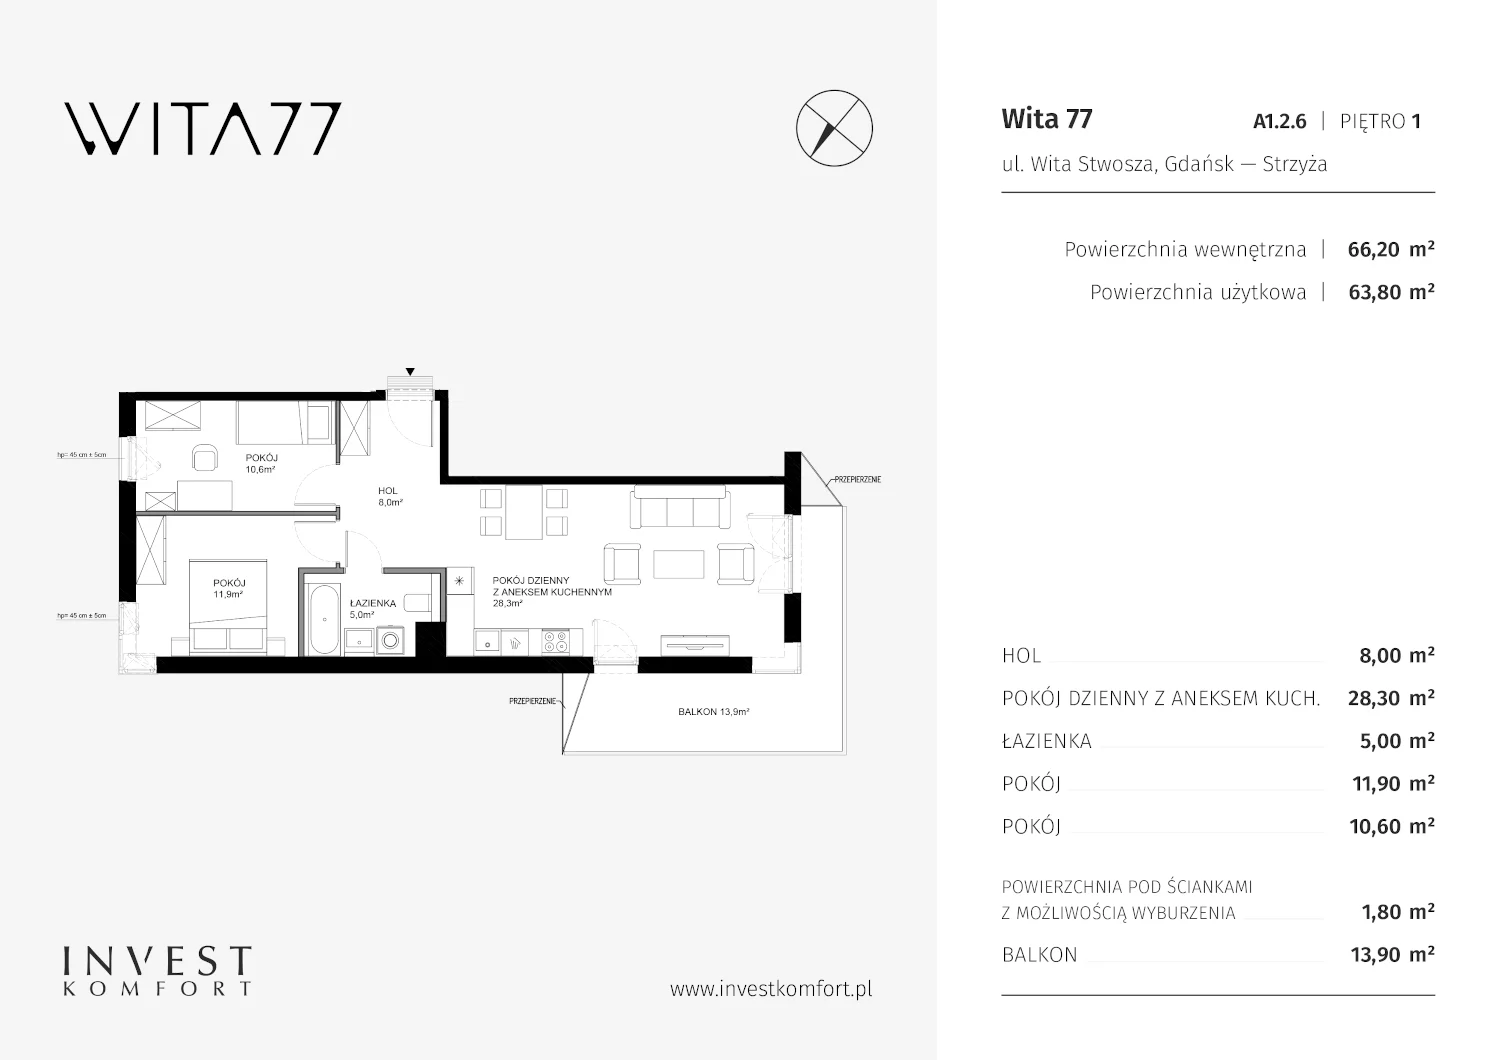 Mieszkanie 66,20 m², piętro 1, oferta nr A1.2.6, Wita 77, Gdańsk, Strzyża, ul. Wita Stwosza 77